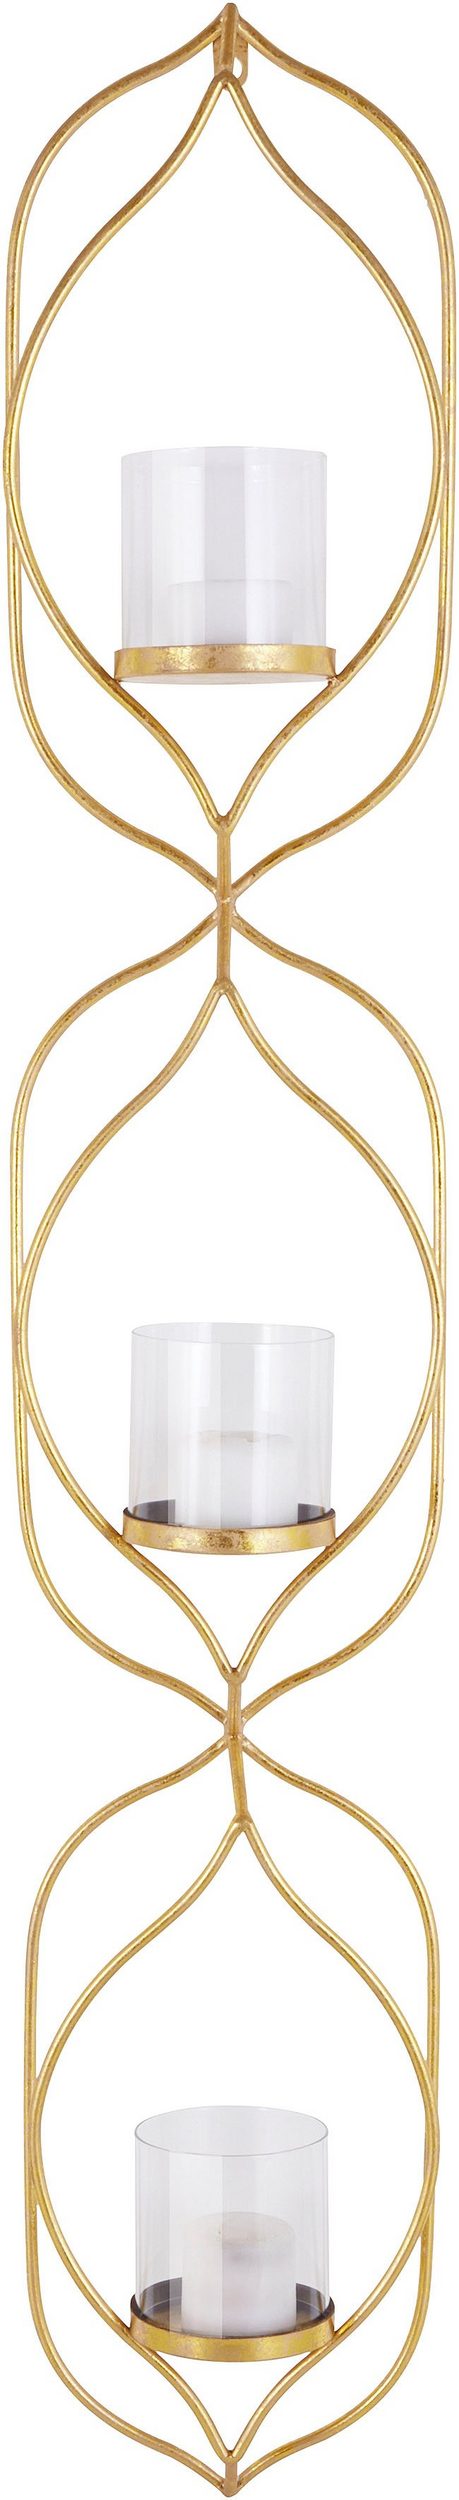 Szlachetny, złoty świecznik ścienny w orientalnym stylu